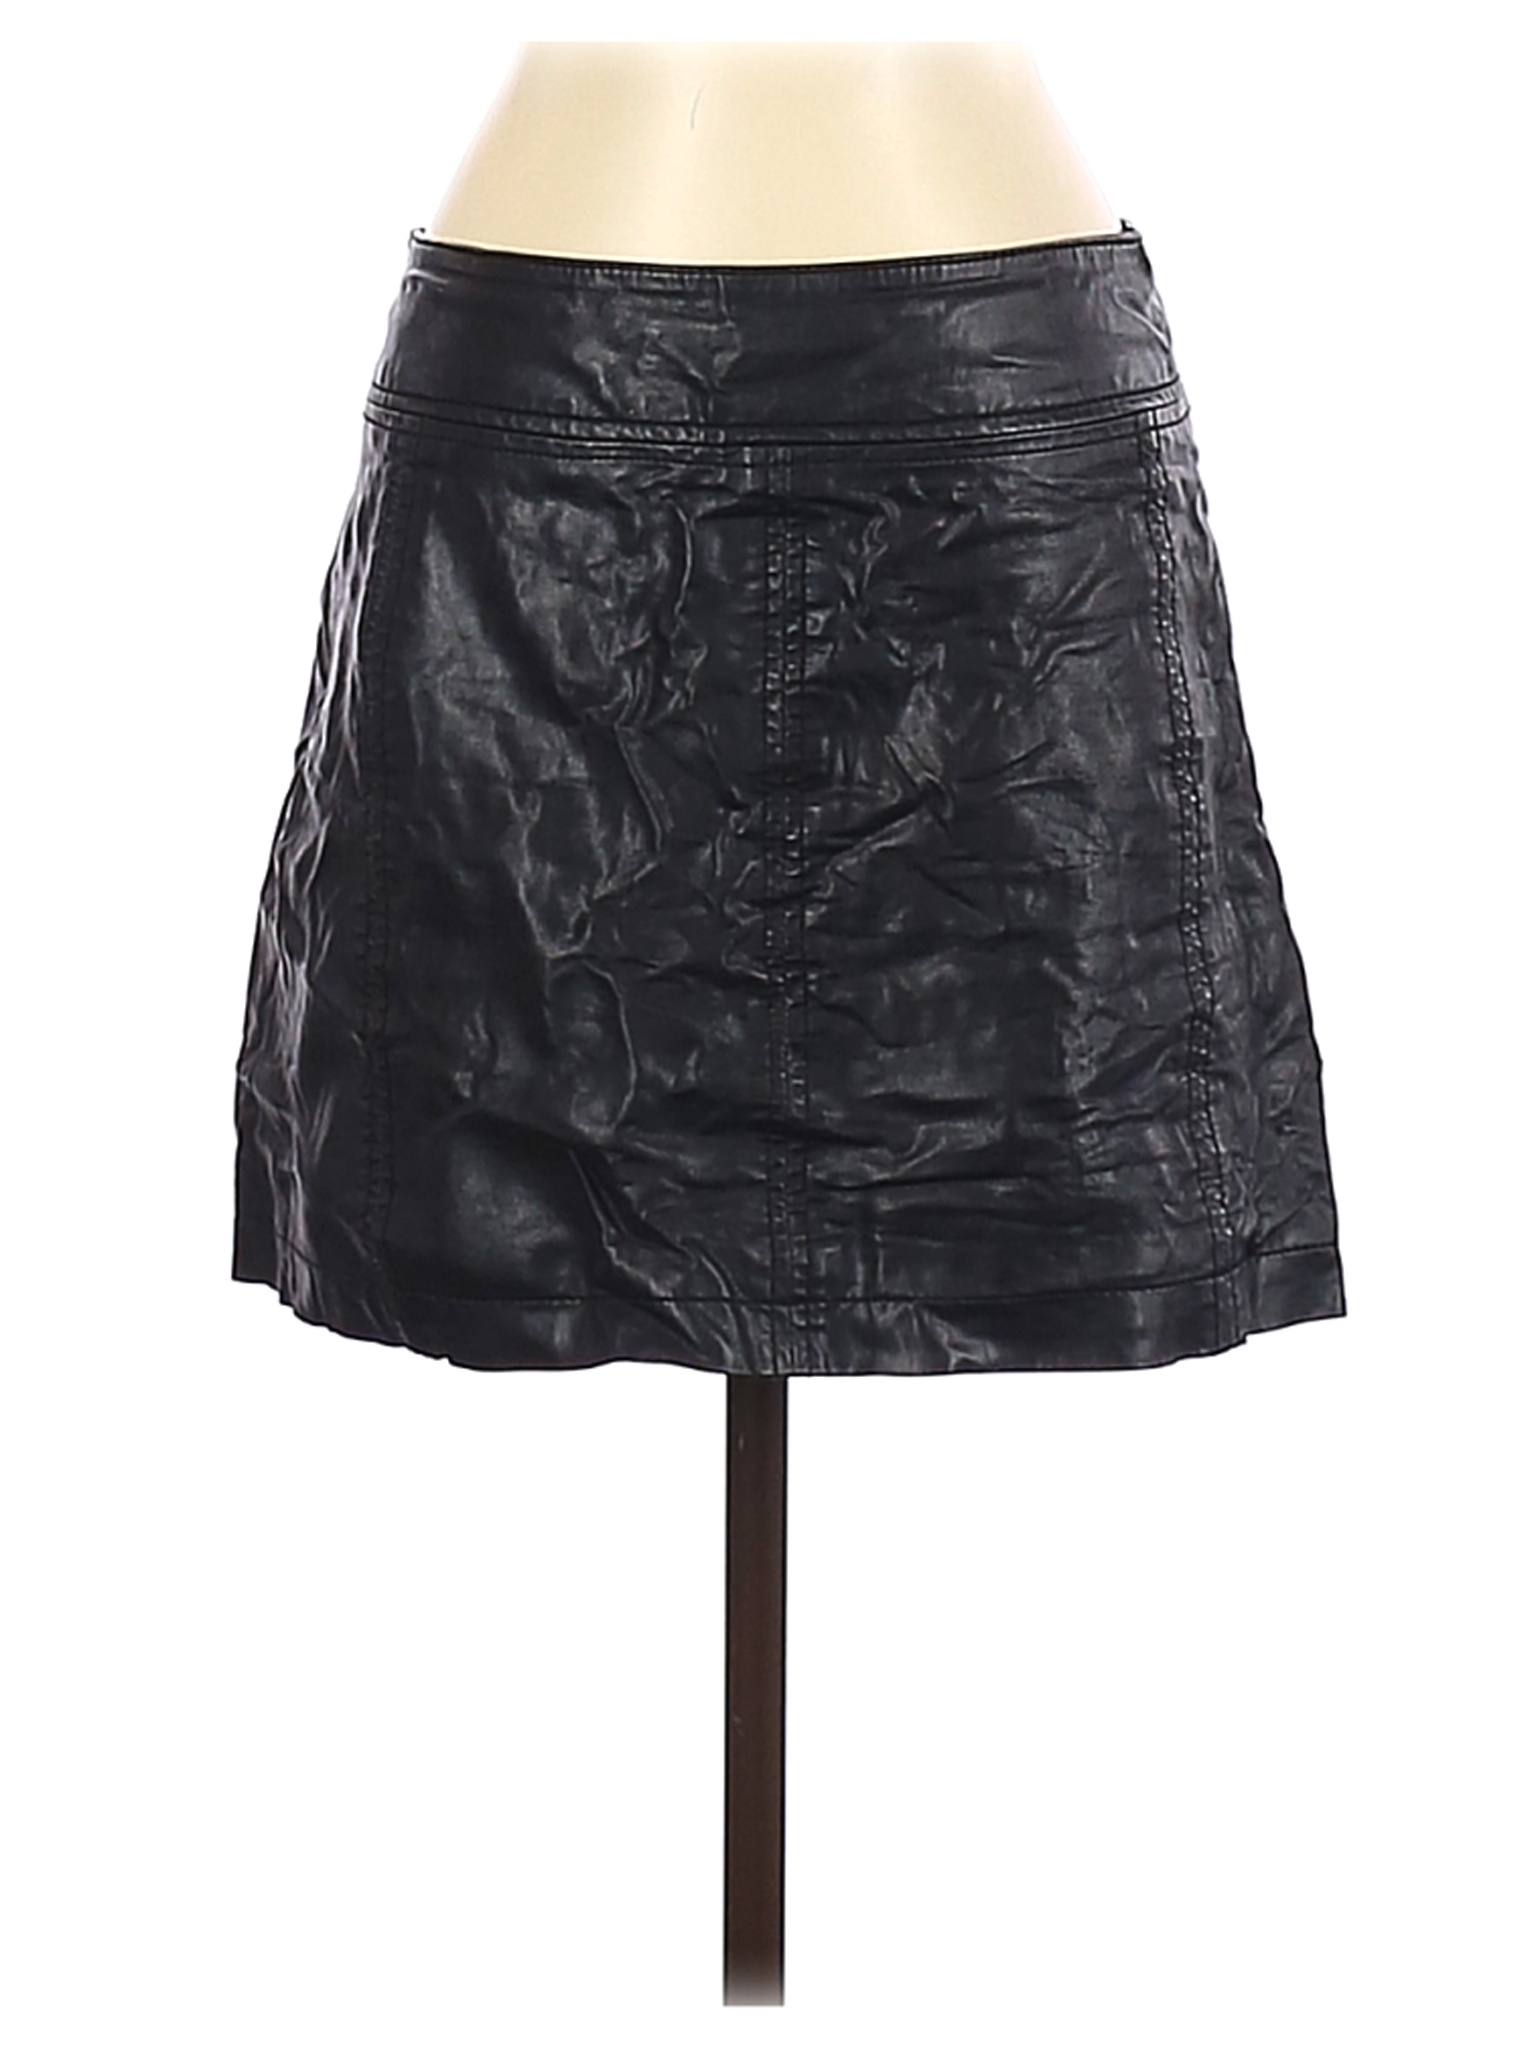 Free People Women Black Faux Leather Skirt 4 | eBay